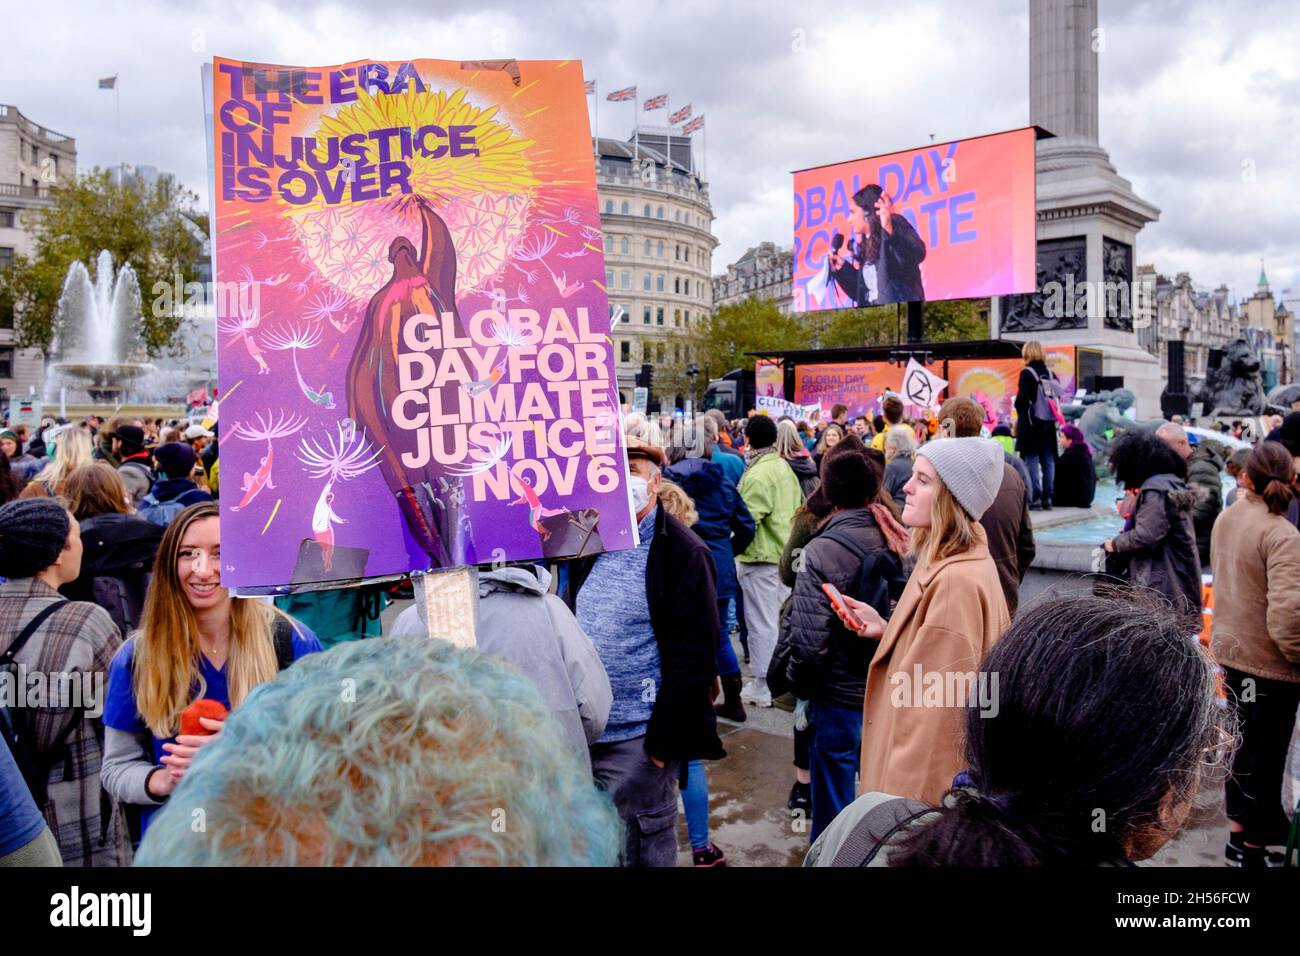 Gli attivisti ambientali si radunano a Trafalgar Square in occasione del Global Day for Climate Justice, Londra, Regno Unito. Foto Stock